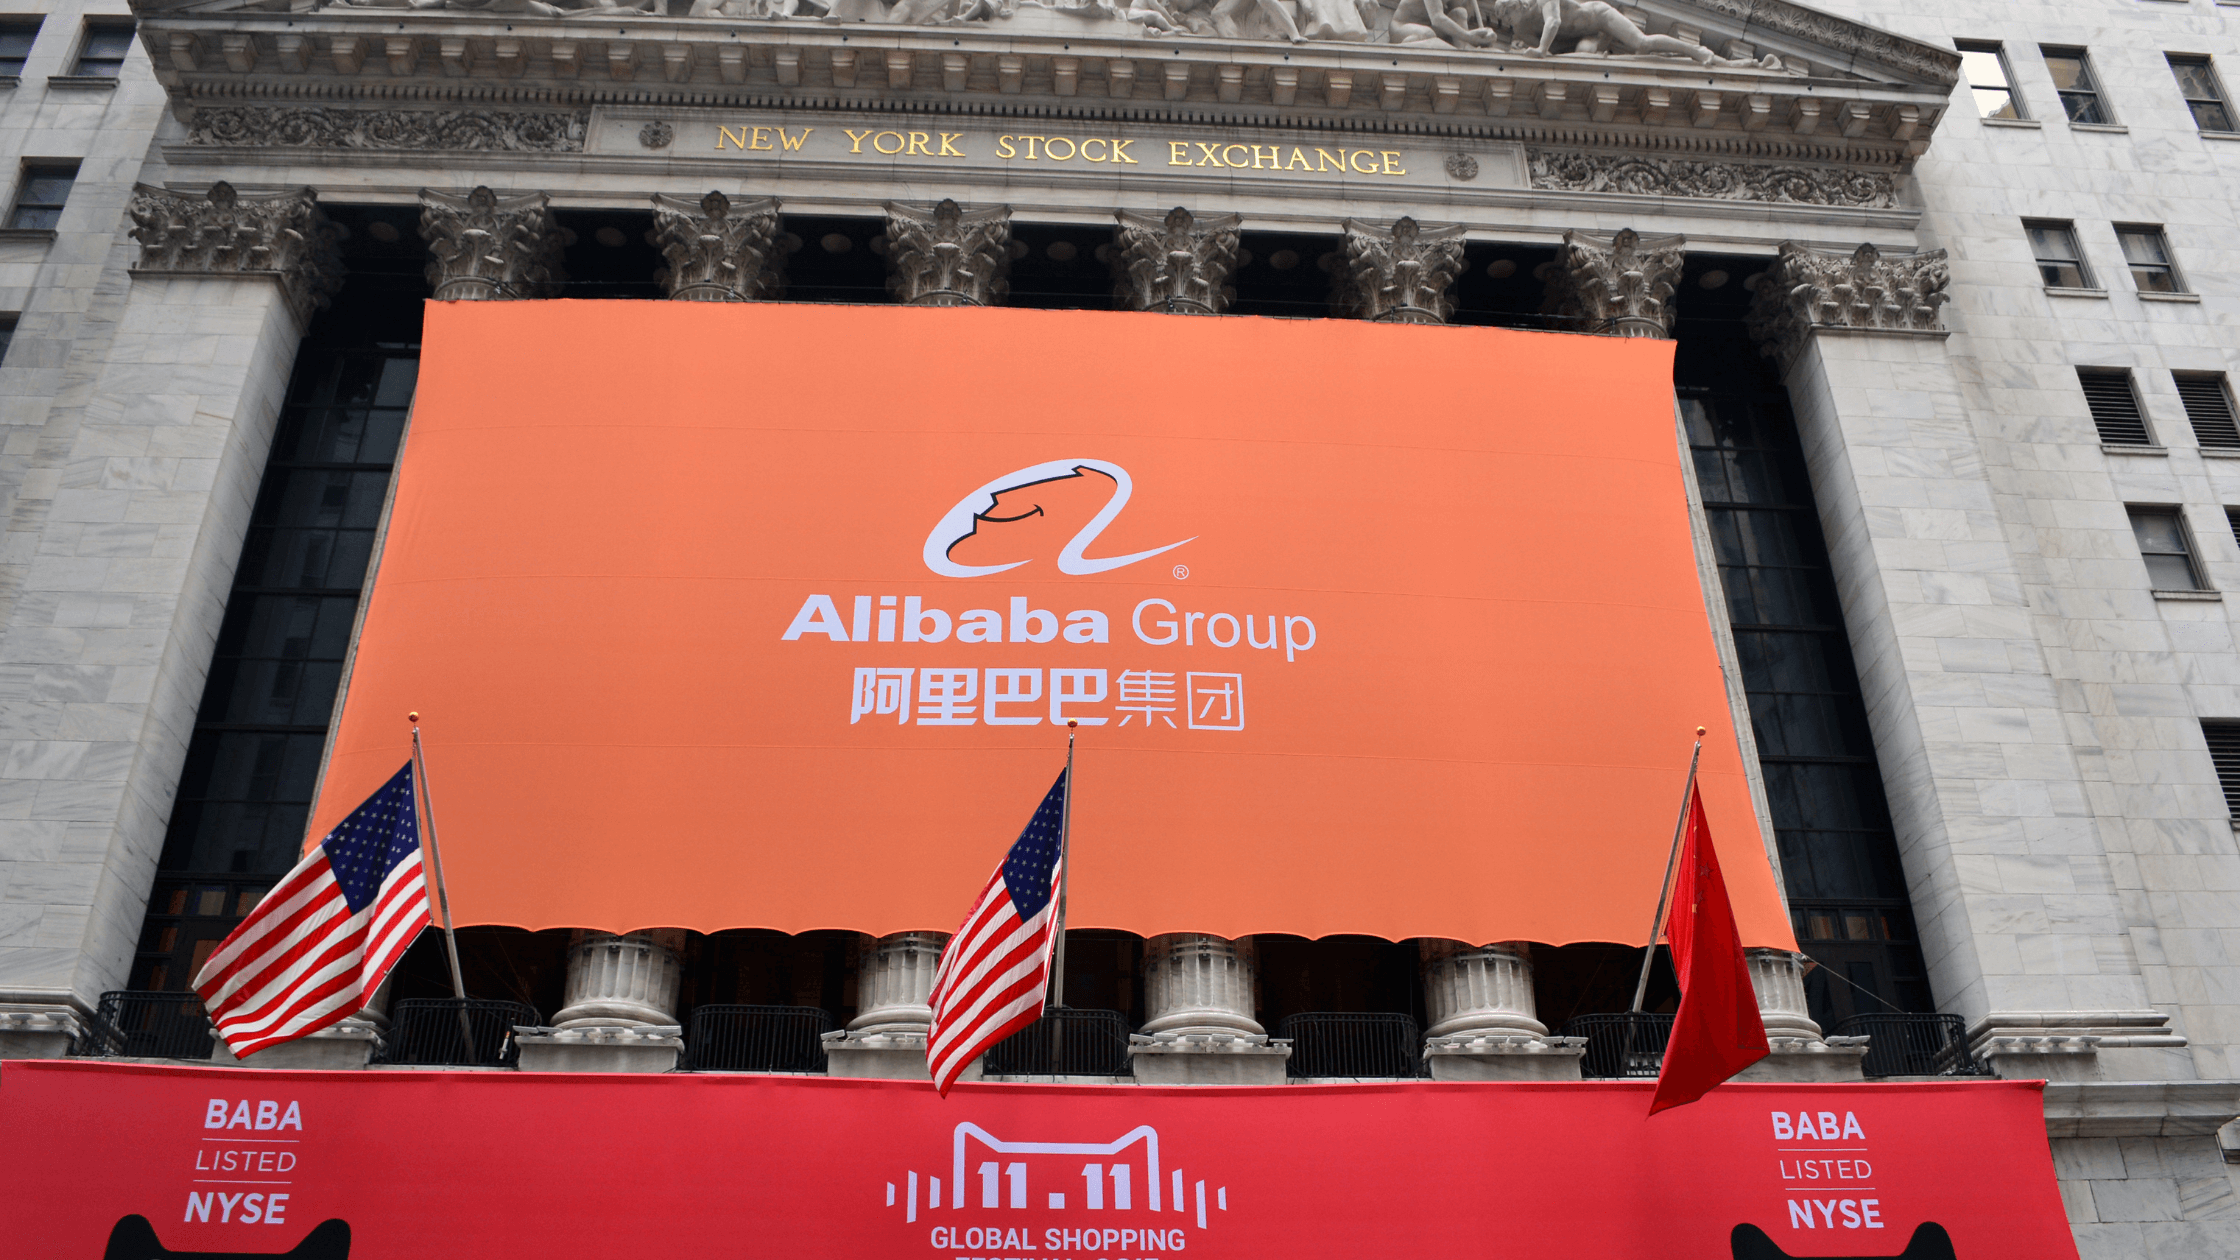 Should You Buy Alibaba’s US or Hong Kong Shares?